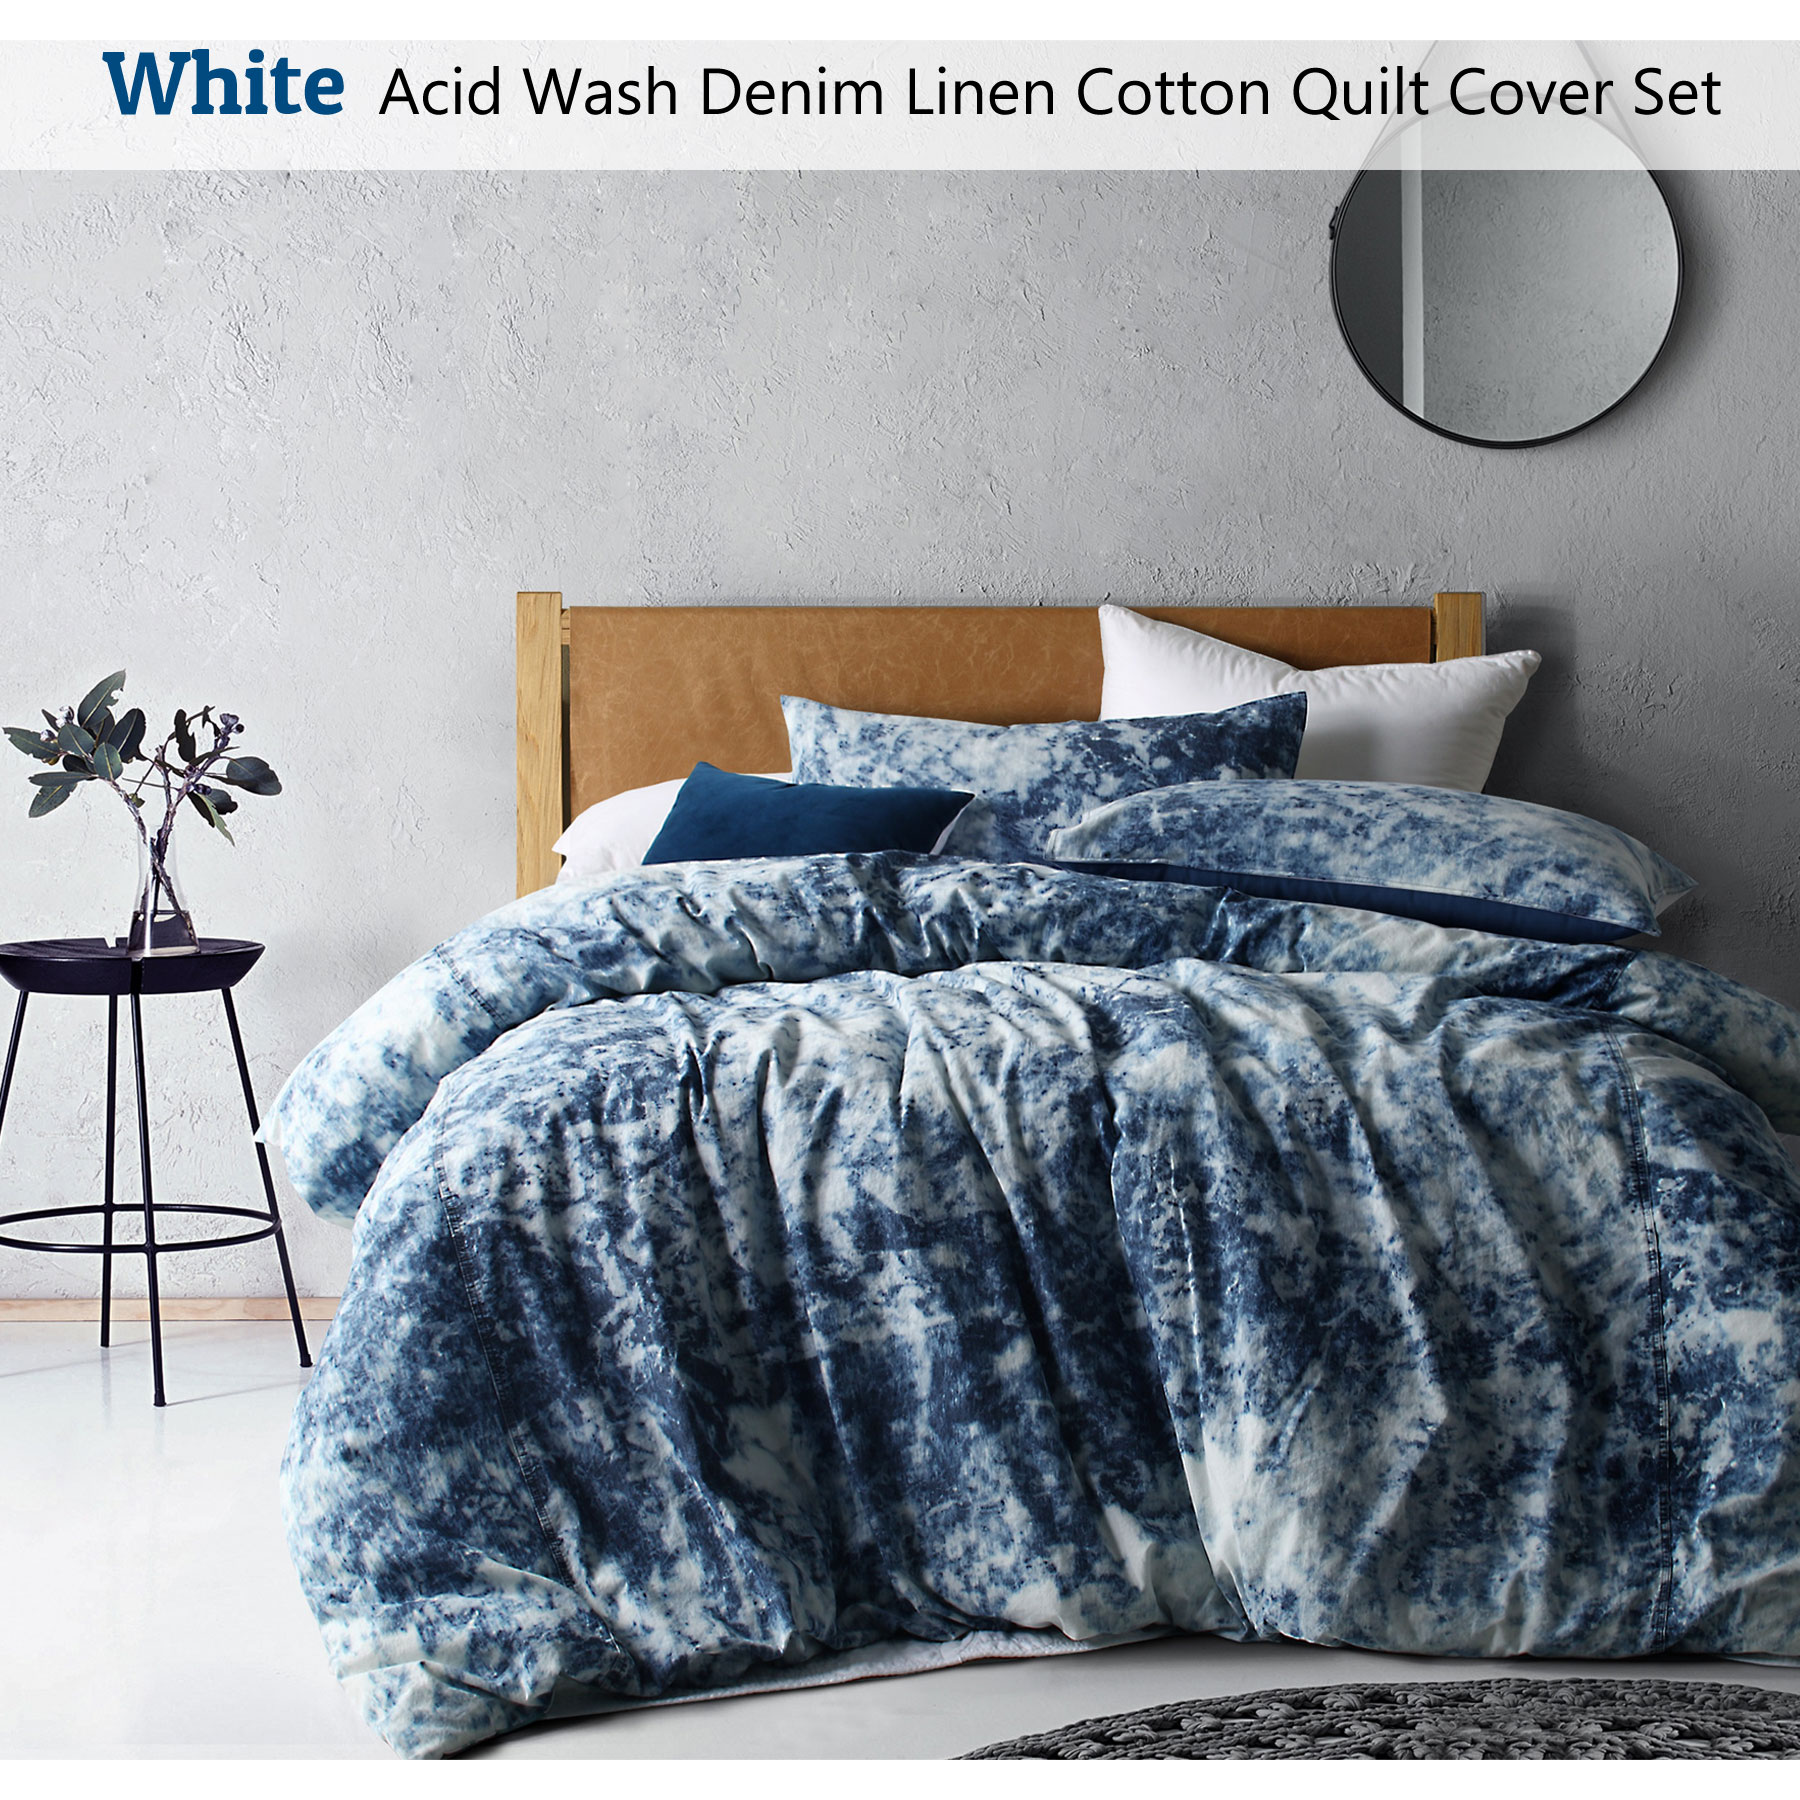 Acid Wash Denim Linen Cotton Quilt Cover Set White Double Queen